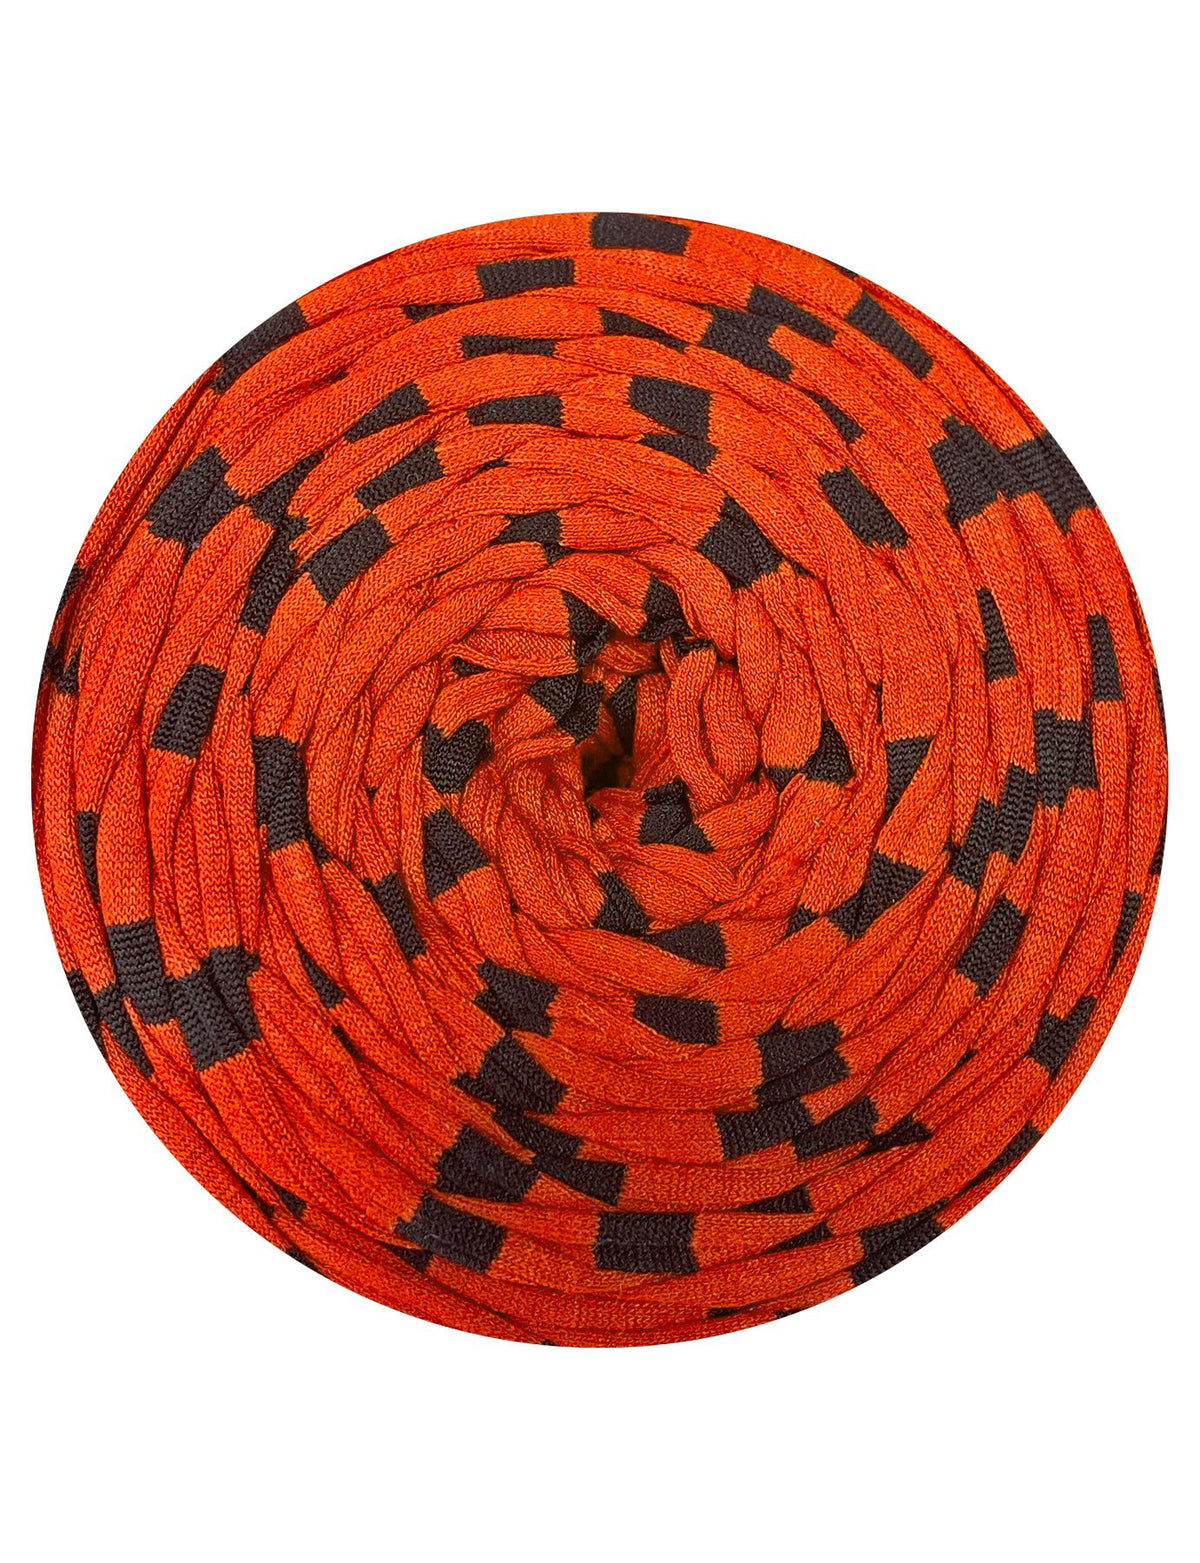 Orange with black stripes t-shirt yarn by Rescue Yarn (100-120m)